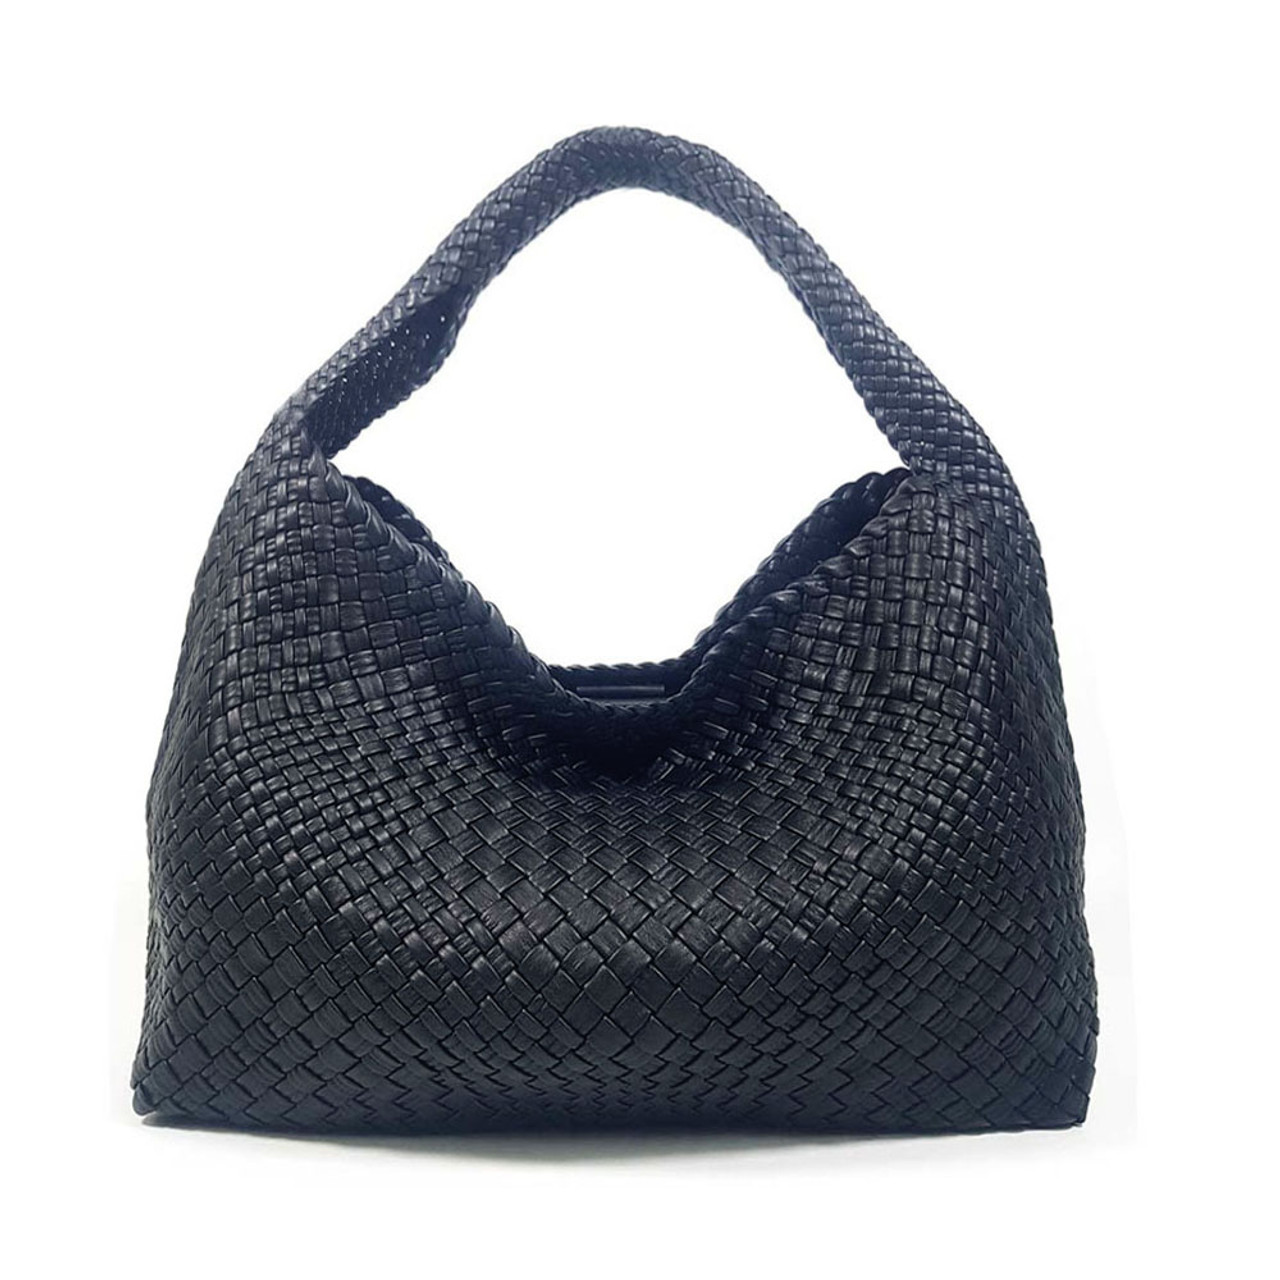 Ghibli Woven Leather Hobo Bucket Bag - Black